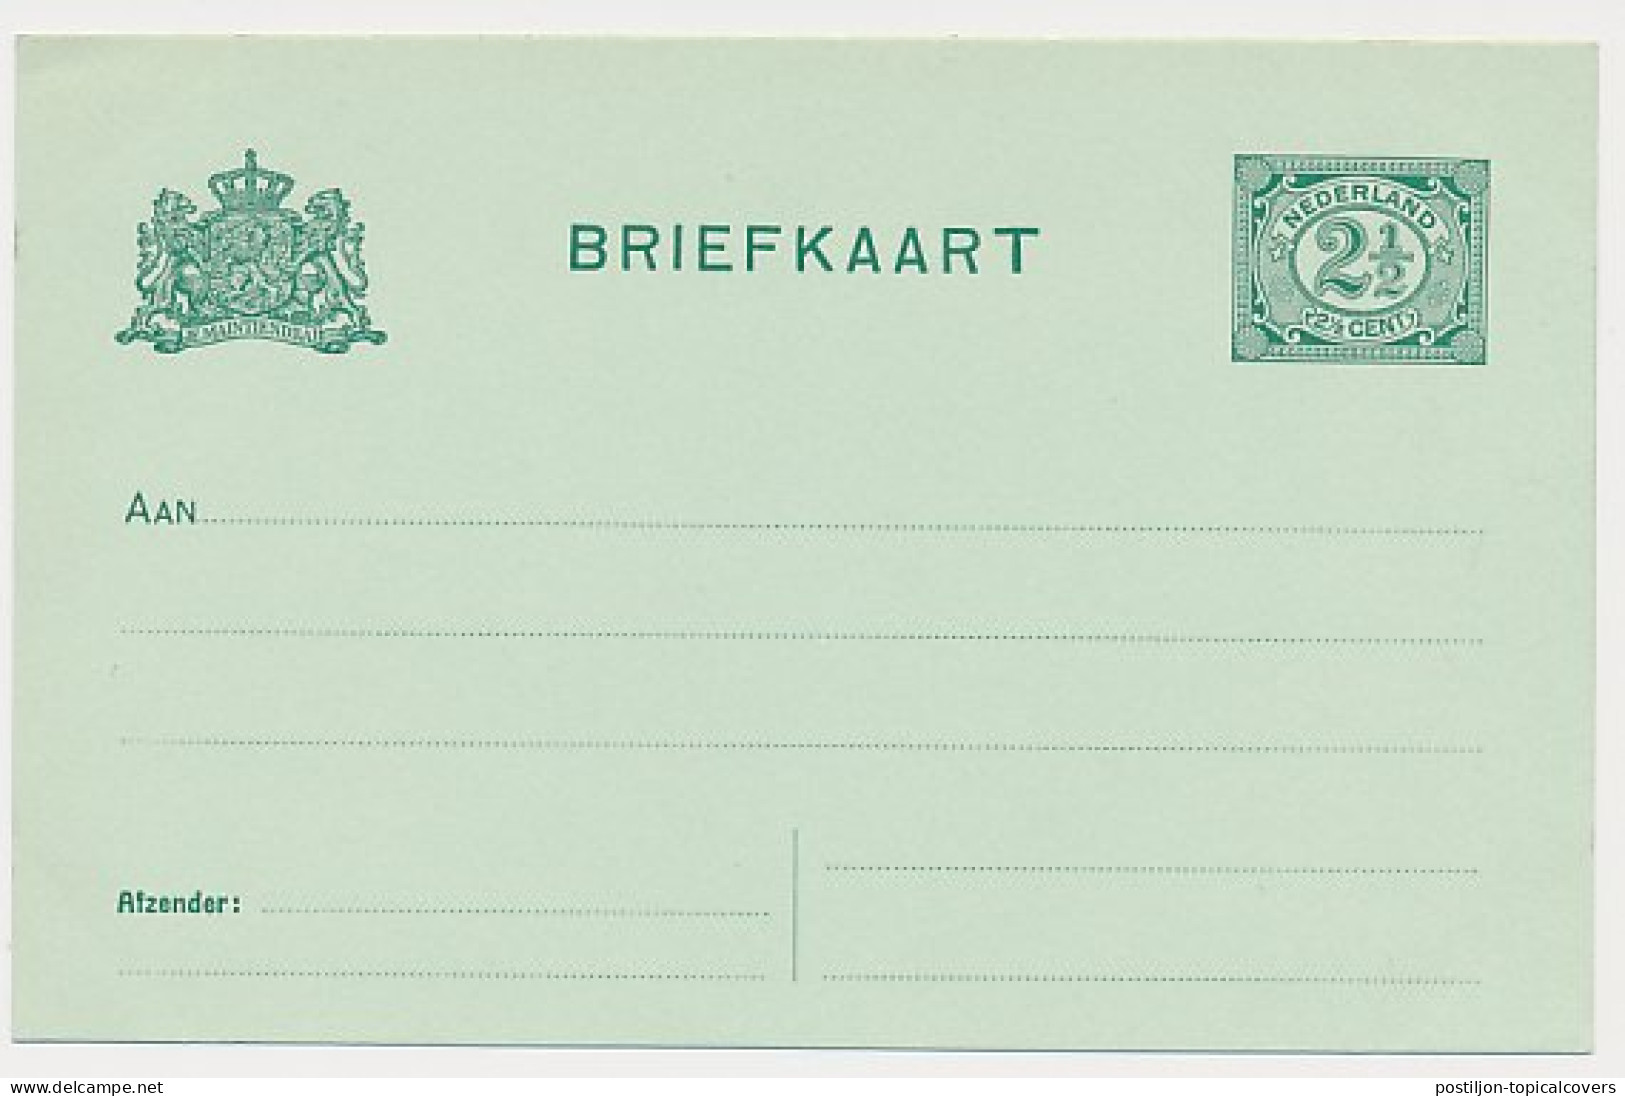 Briefkaart G. 80 A II - Ganzsachen